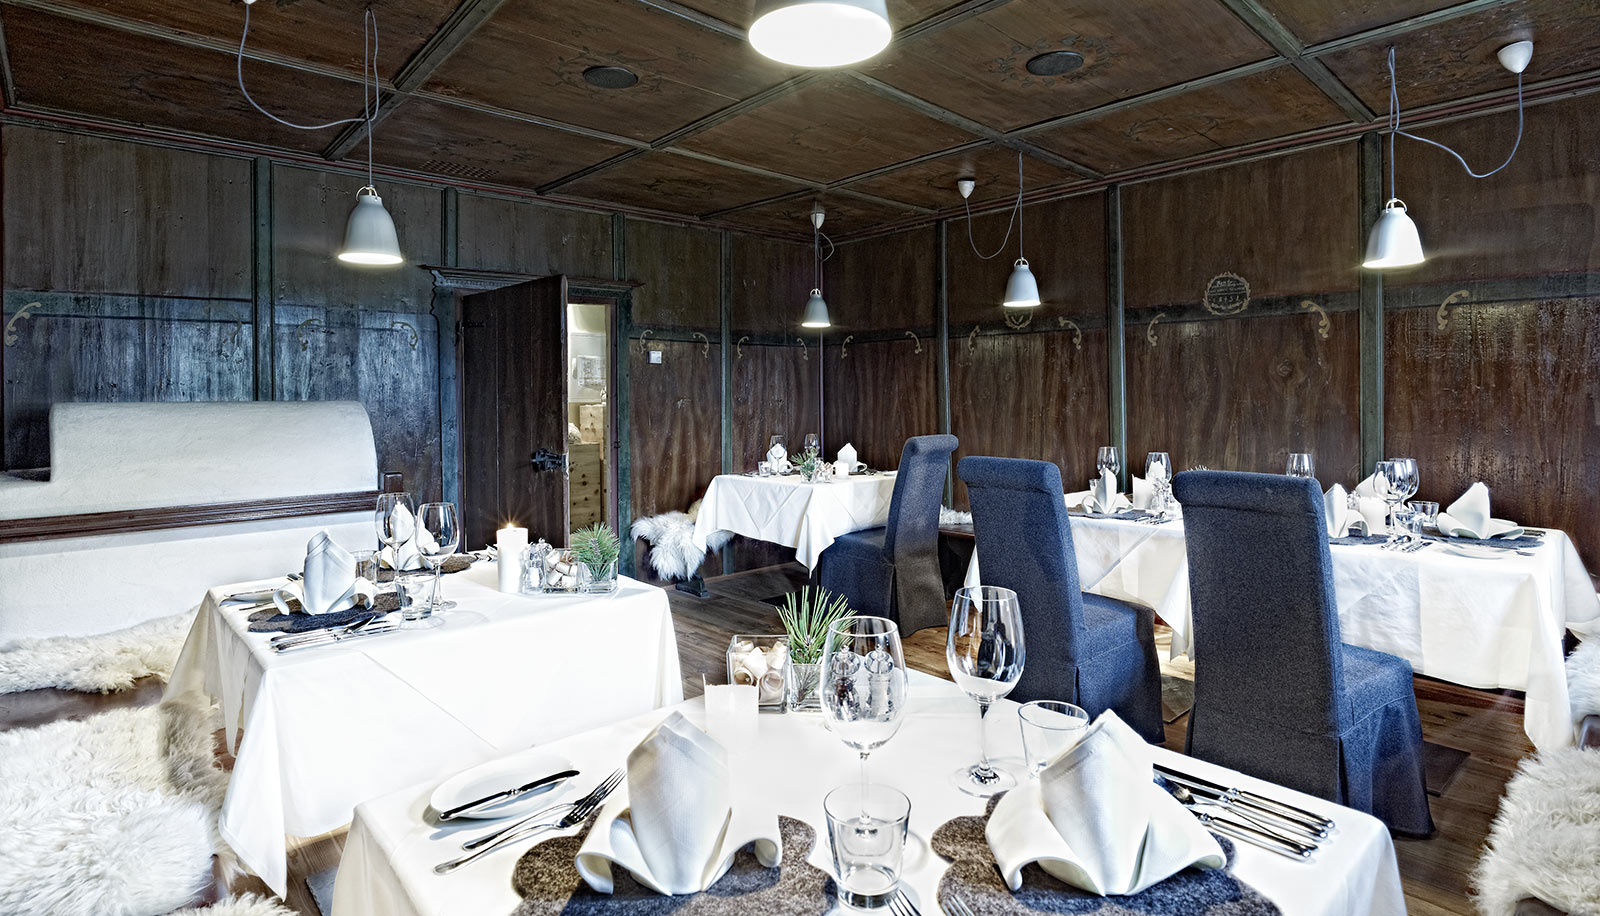 Stube in legno scuro, stufa e tavoli apparecchiati all'Arosea Life Balance Hotel in Val d'Ultimo